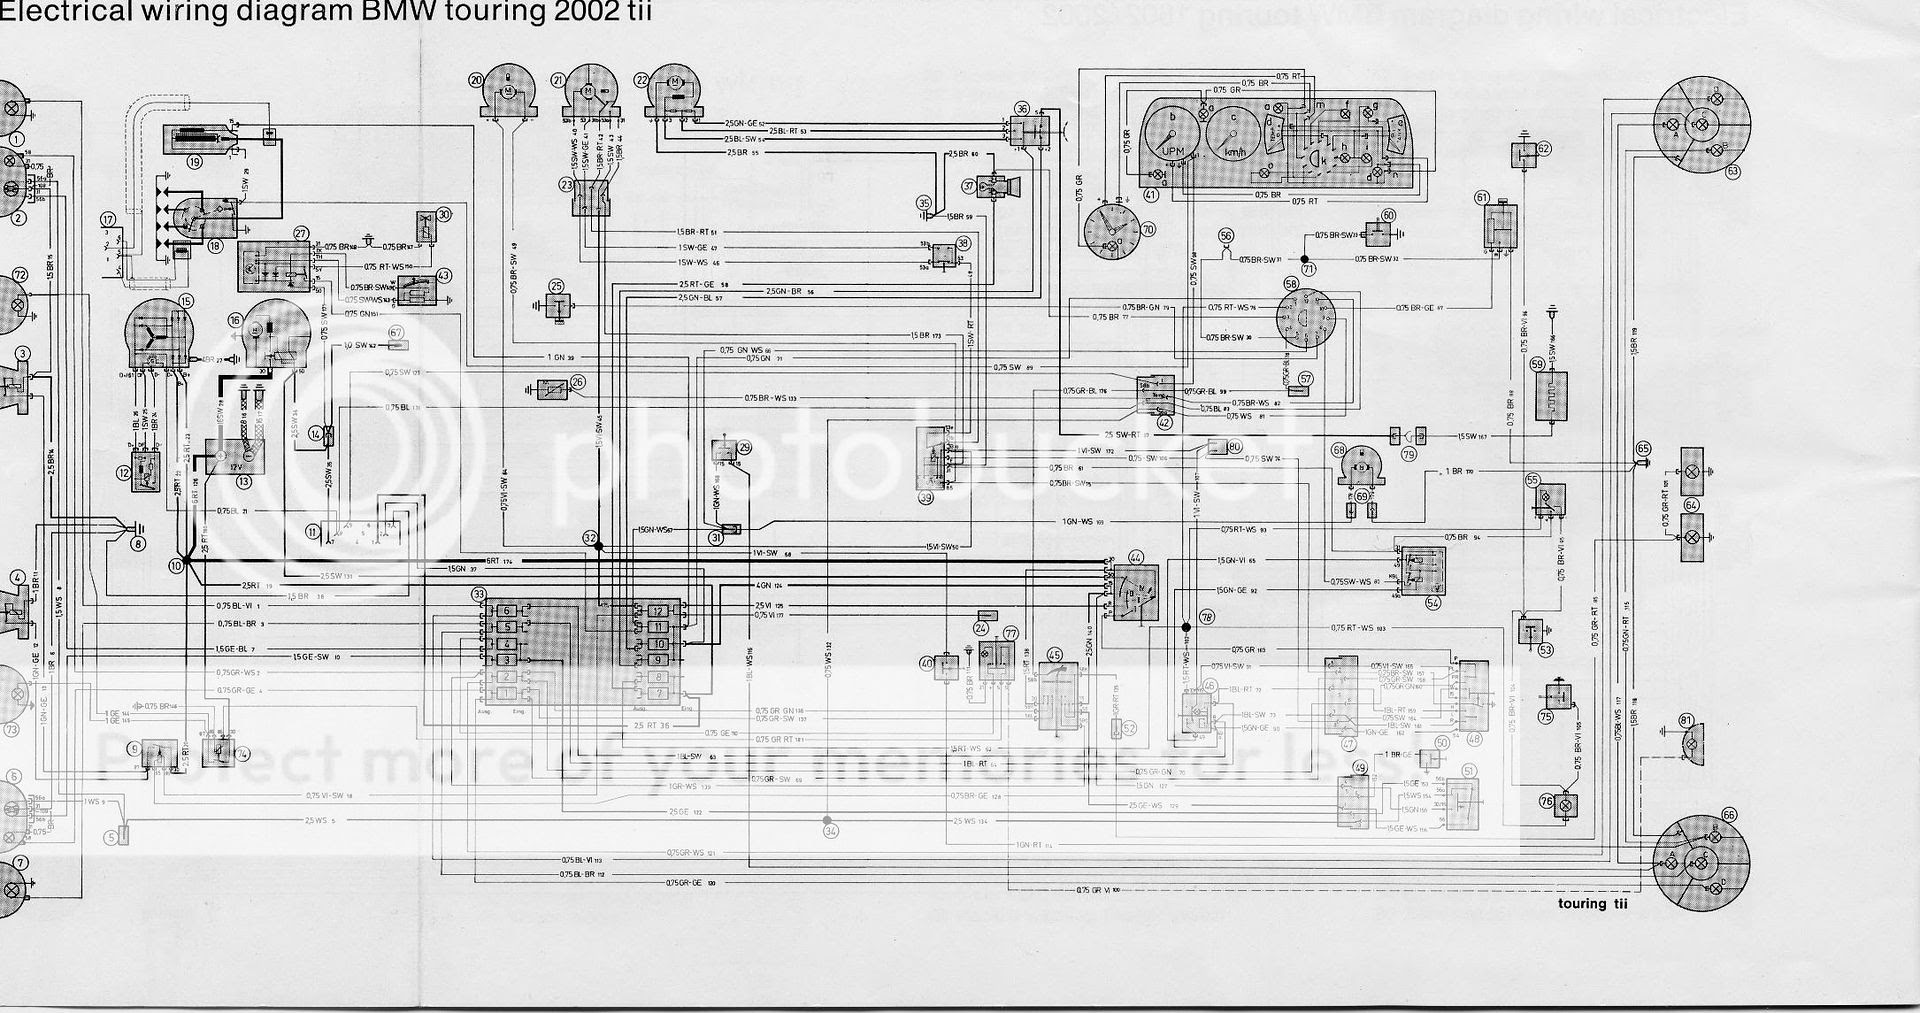 Wiring Diagram PDF: 2003 Bmw 525i Engine Bay Diagram